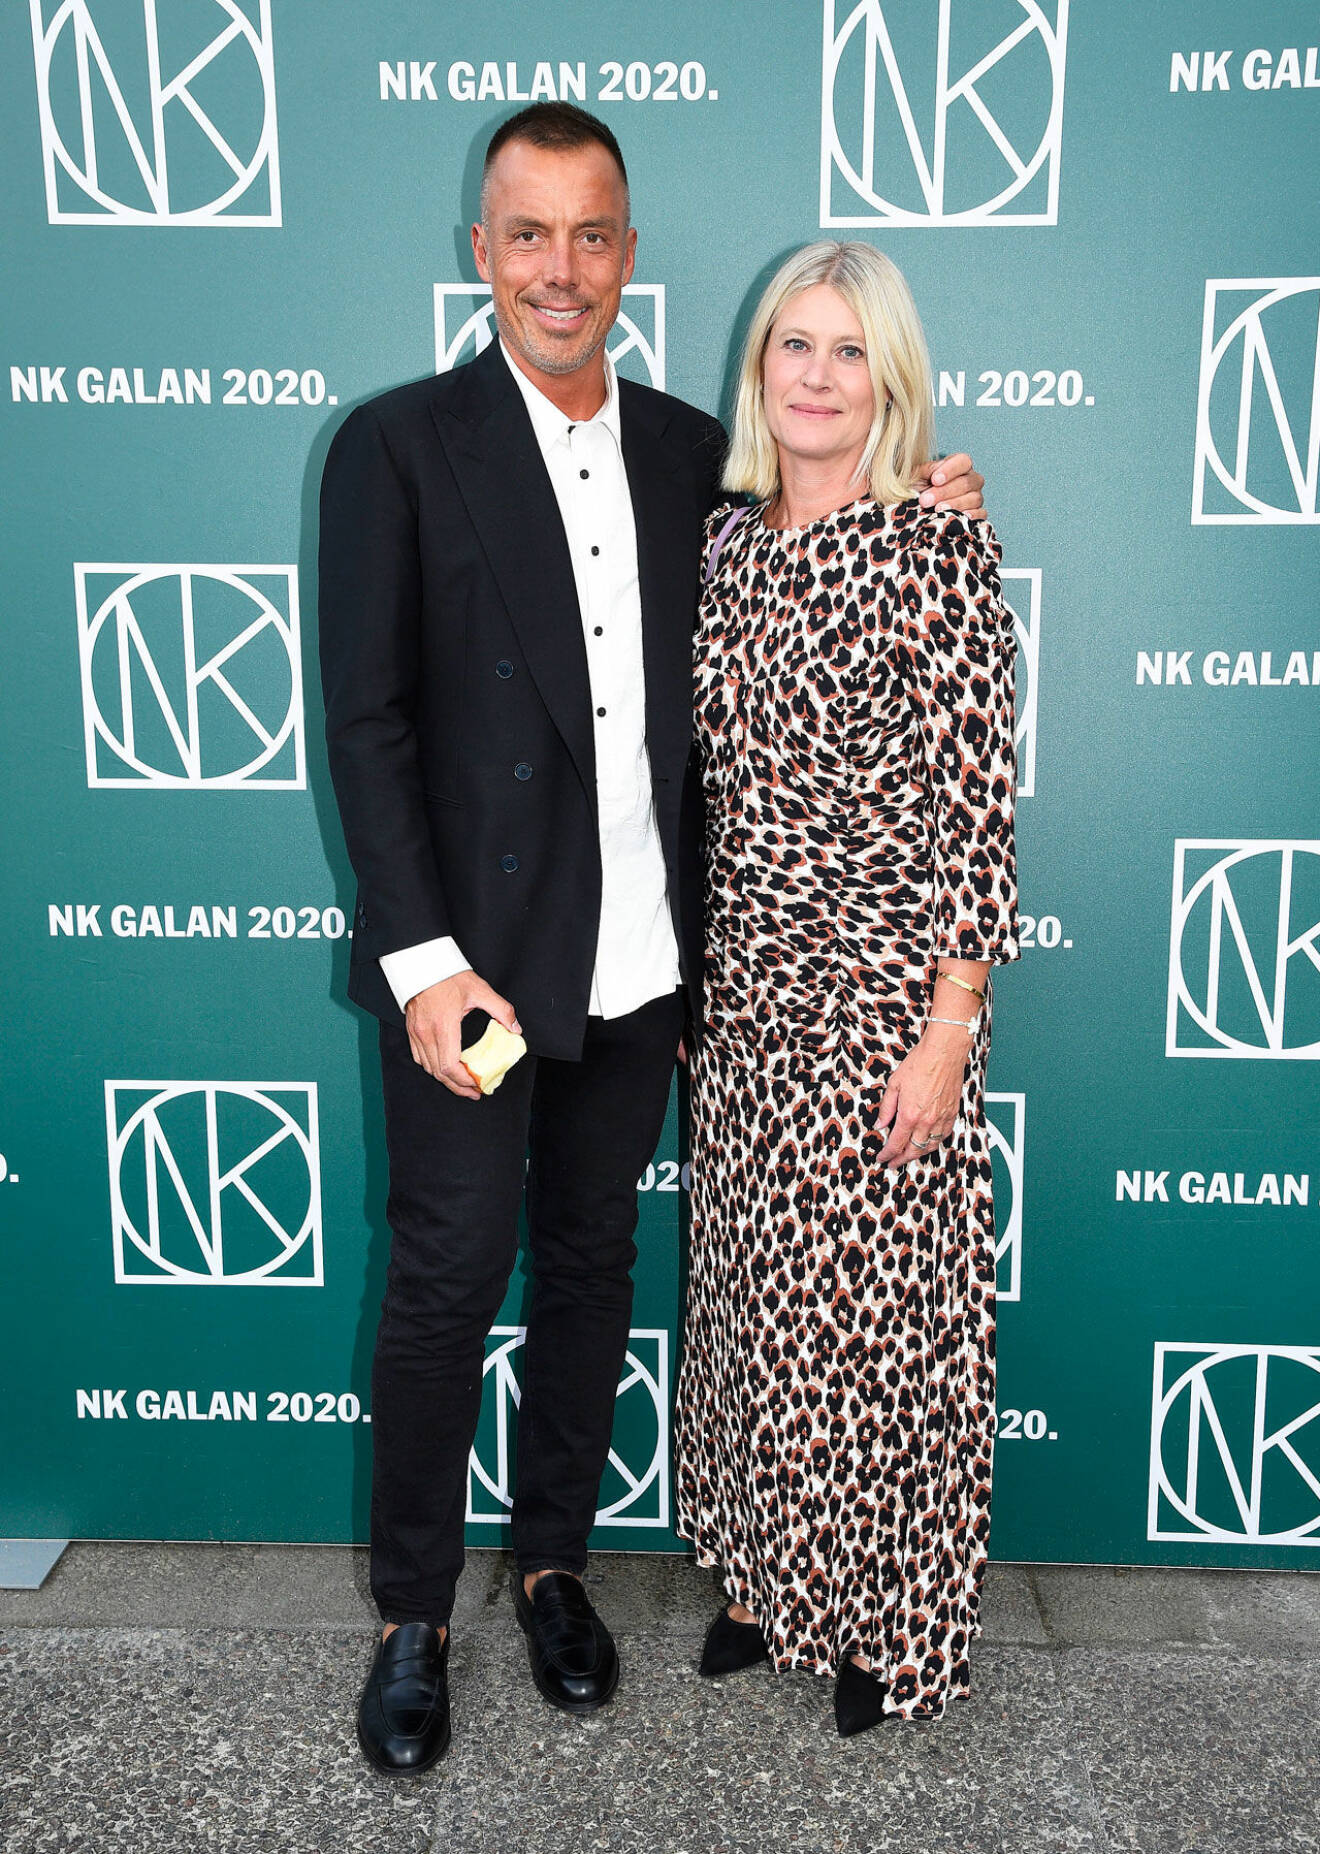 Daniel Lindström och Maria Sjölander, projektledare för NK Galan.